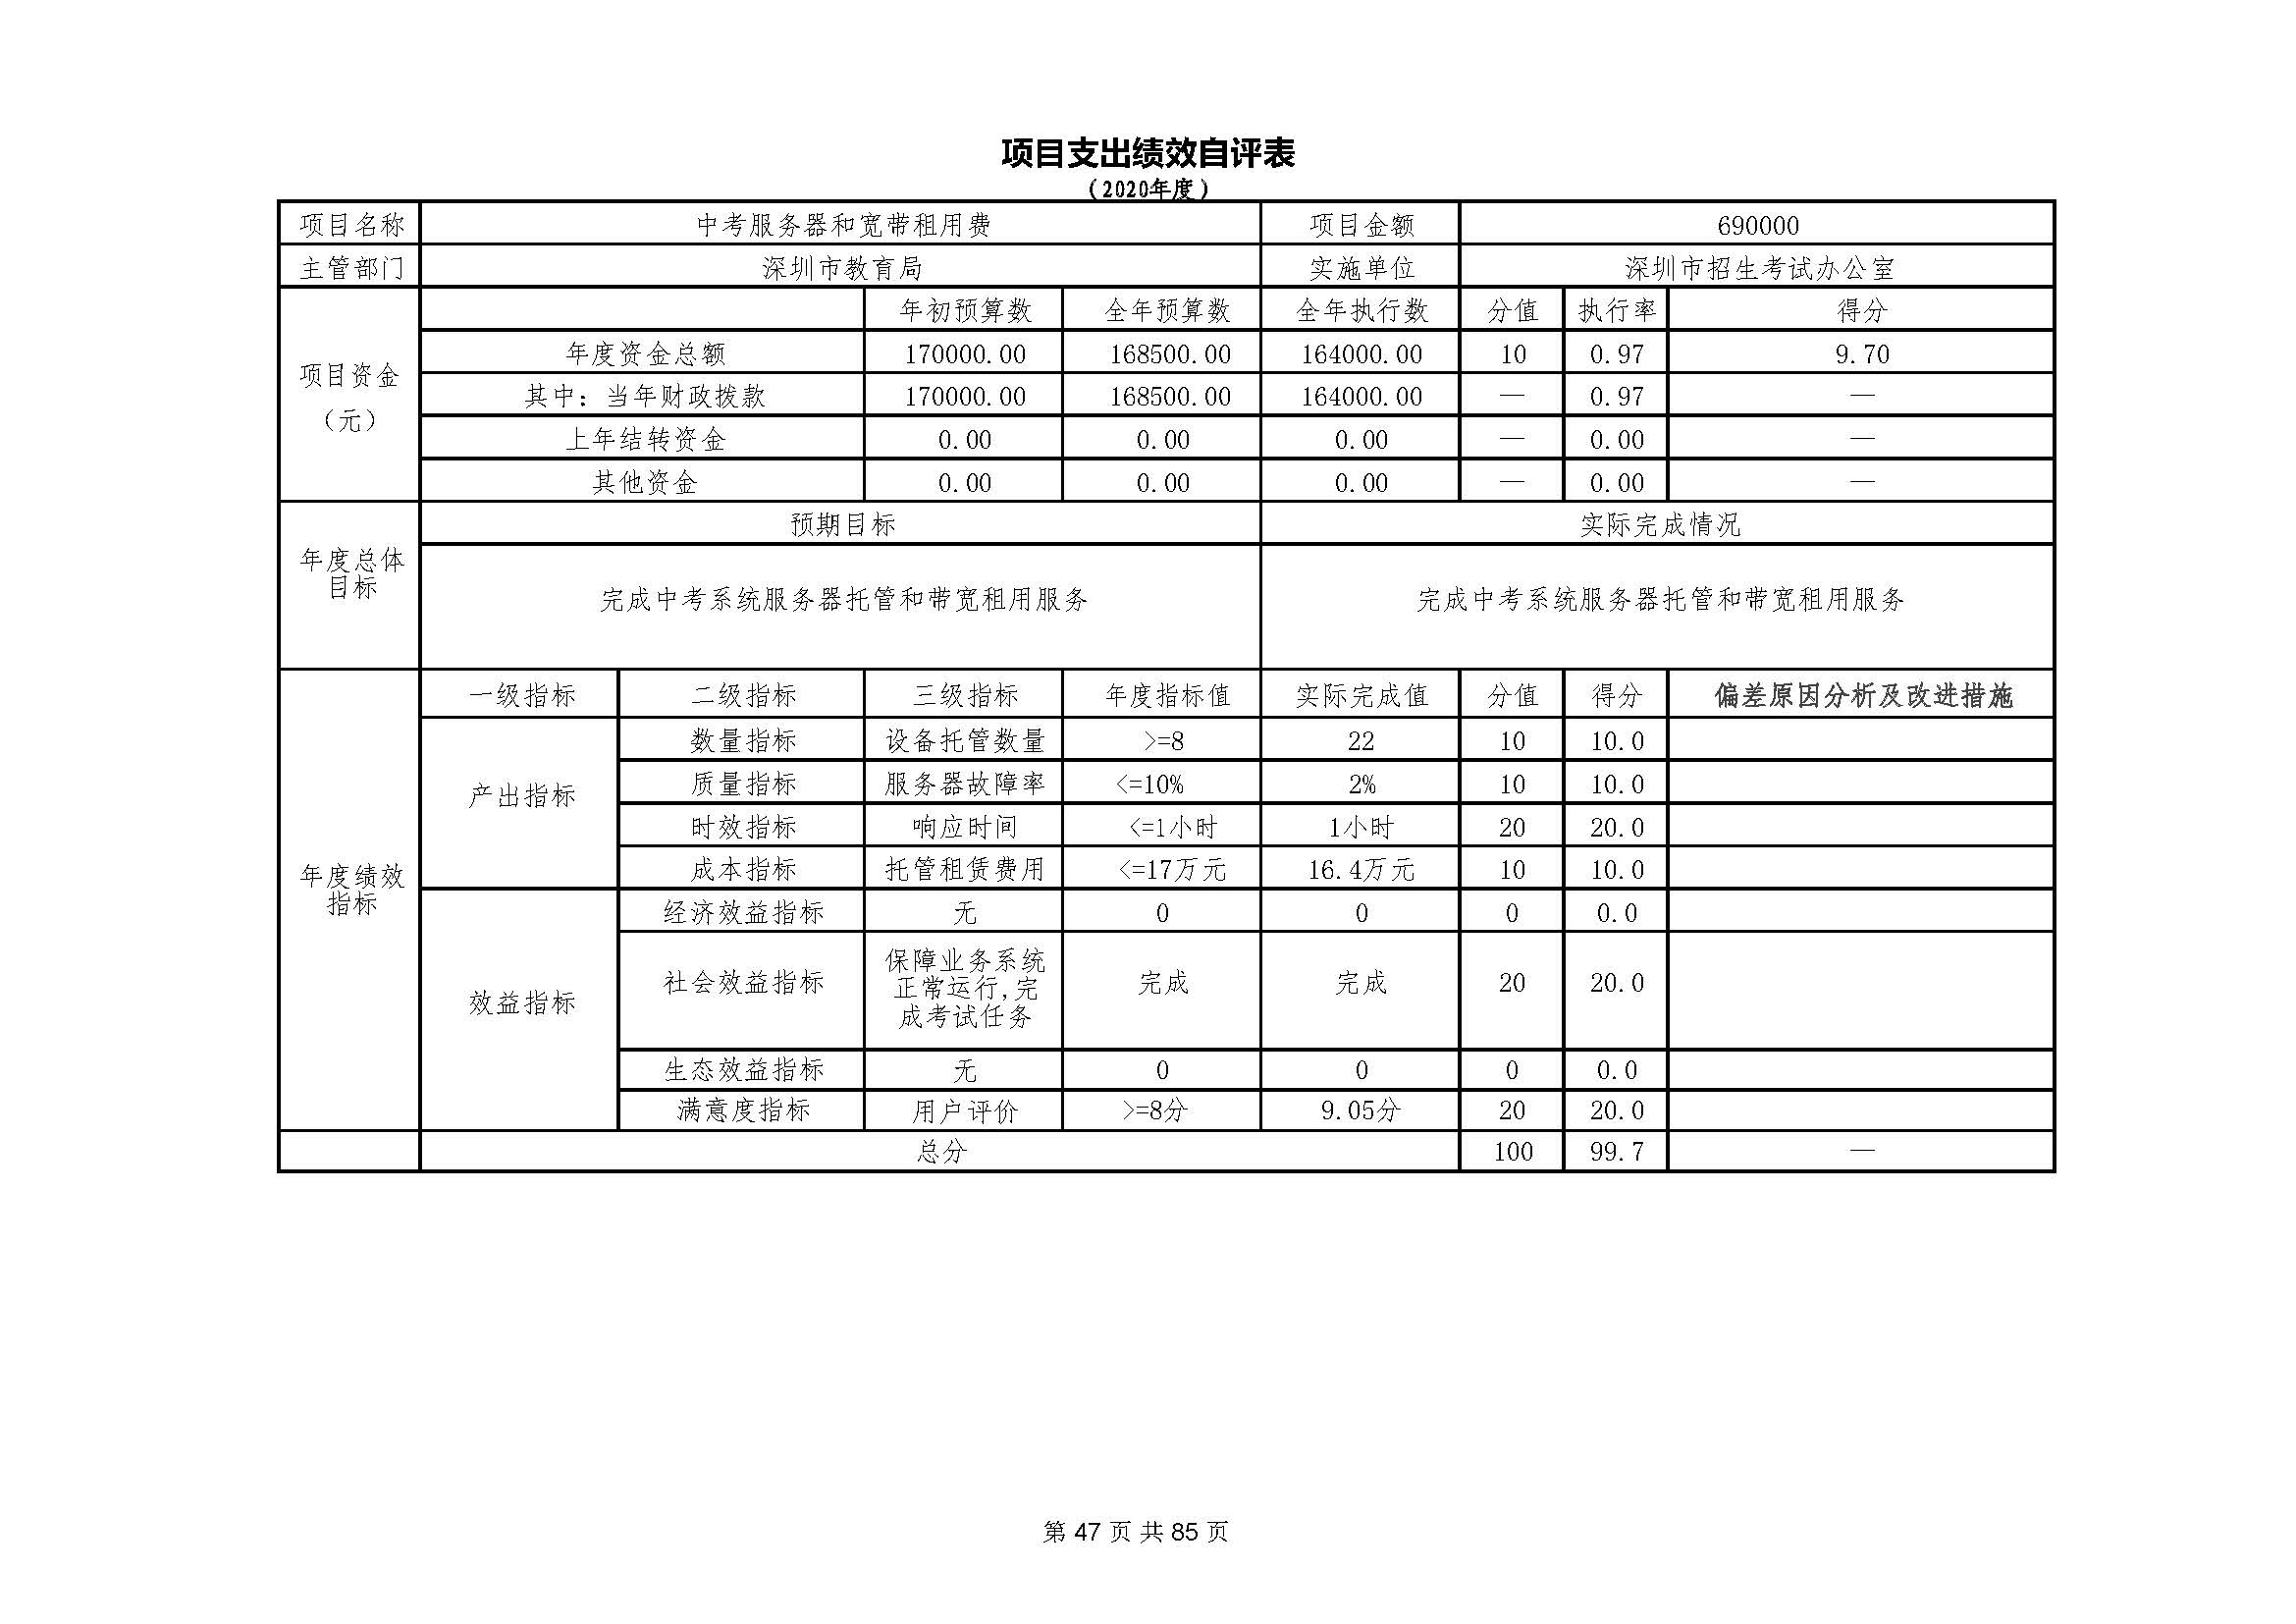 深圳市招生考试办公室2020年度部门决算_页面_48.jpg